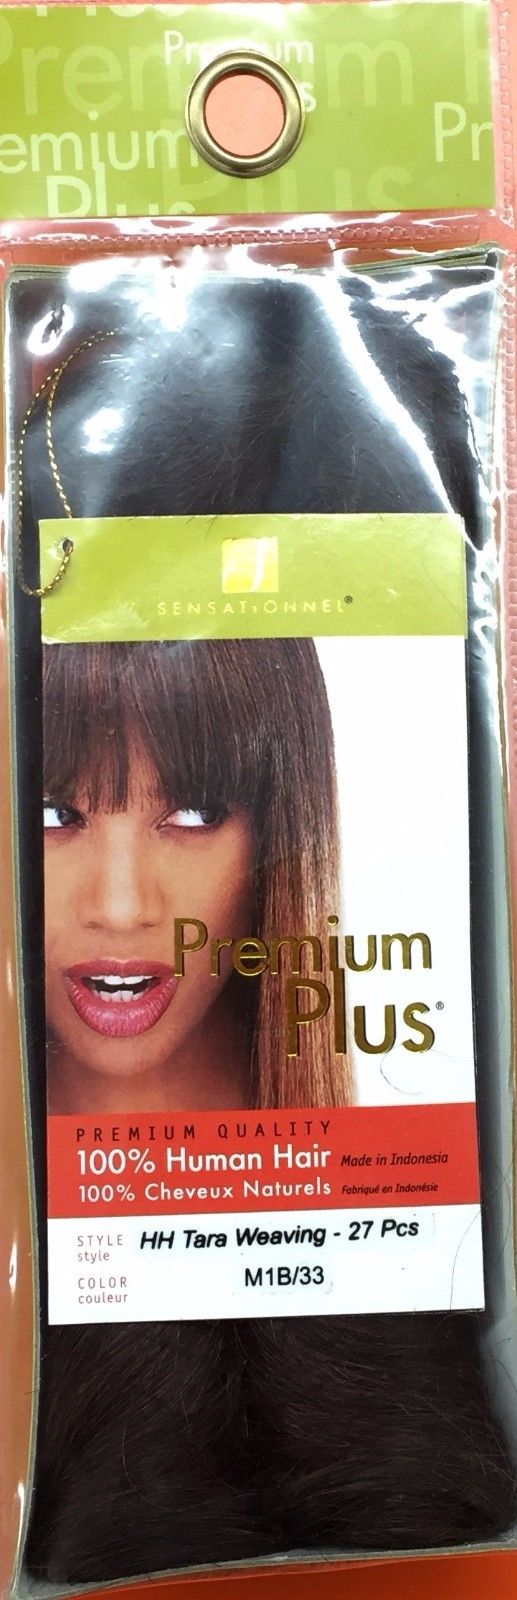 Premium Plus 100% Human Hair TARA Weave 27 PCS (All Colors)